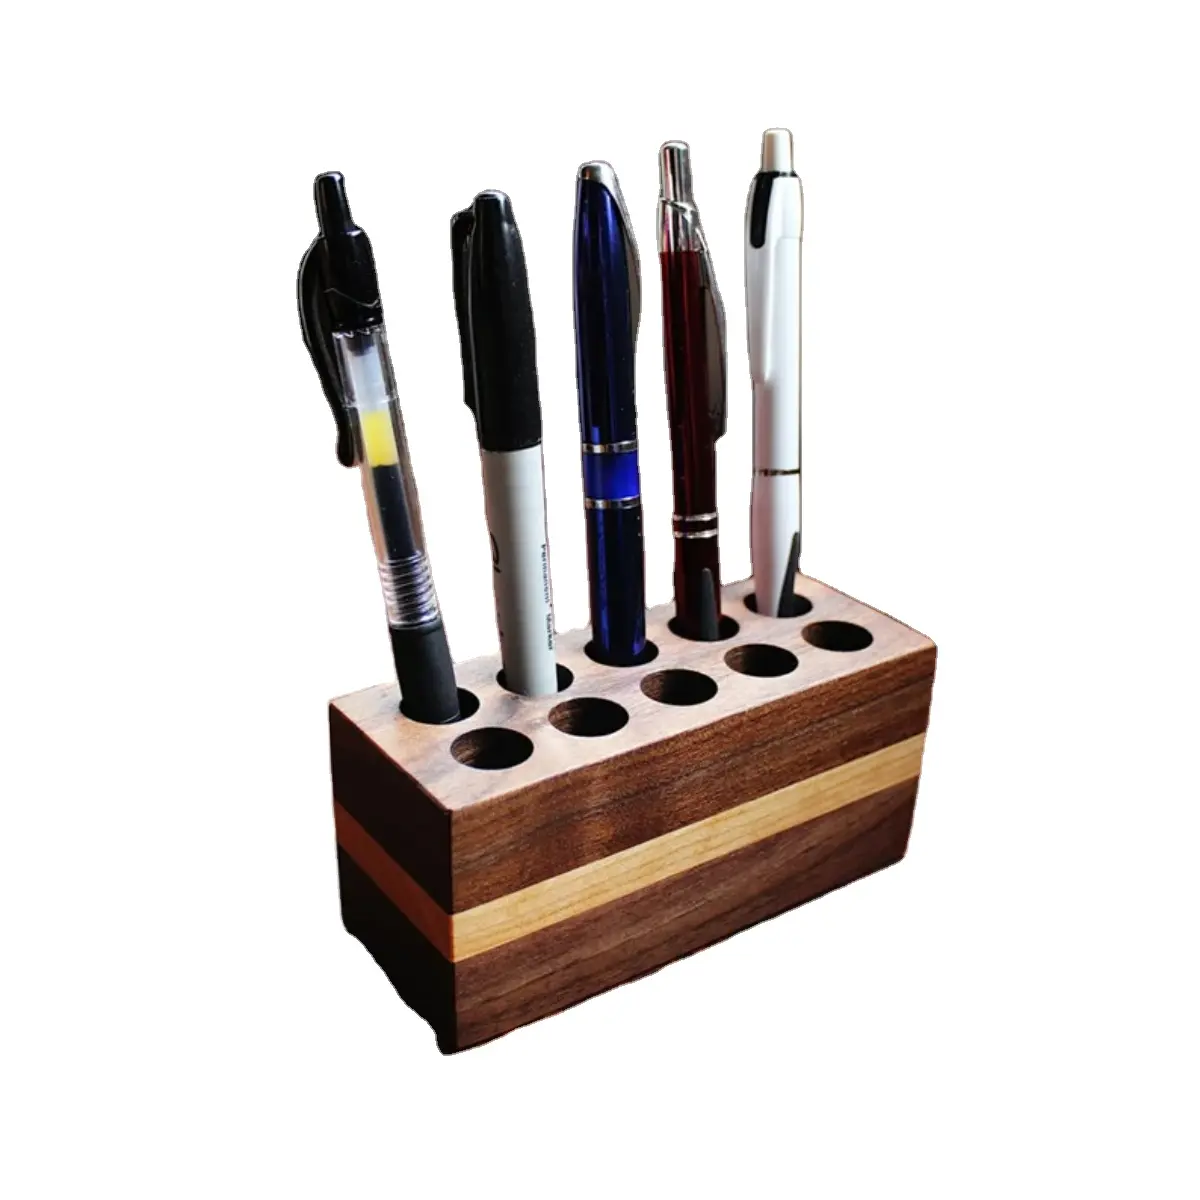 Kunden spezifische Form und Größe Stift Display halter und Ständer Premium-Qualität Bambus Holz Schreibtisch Top Bleistift halter und Ständer